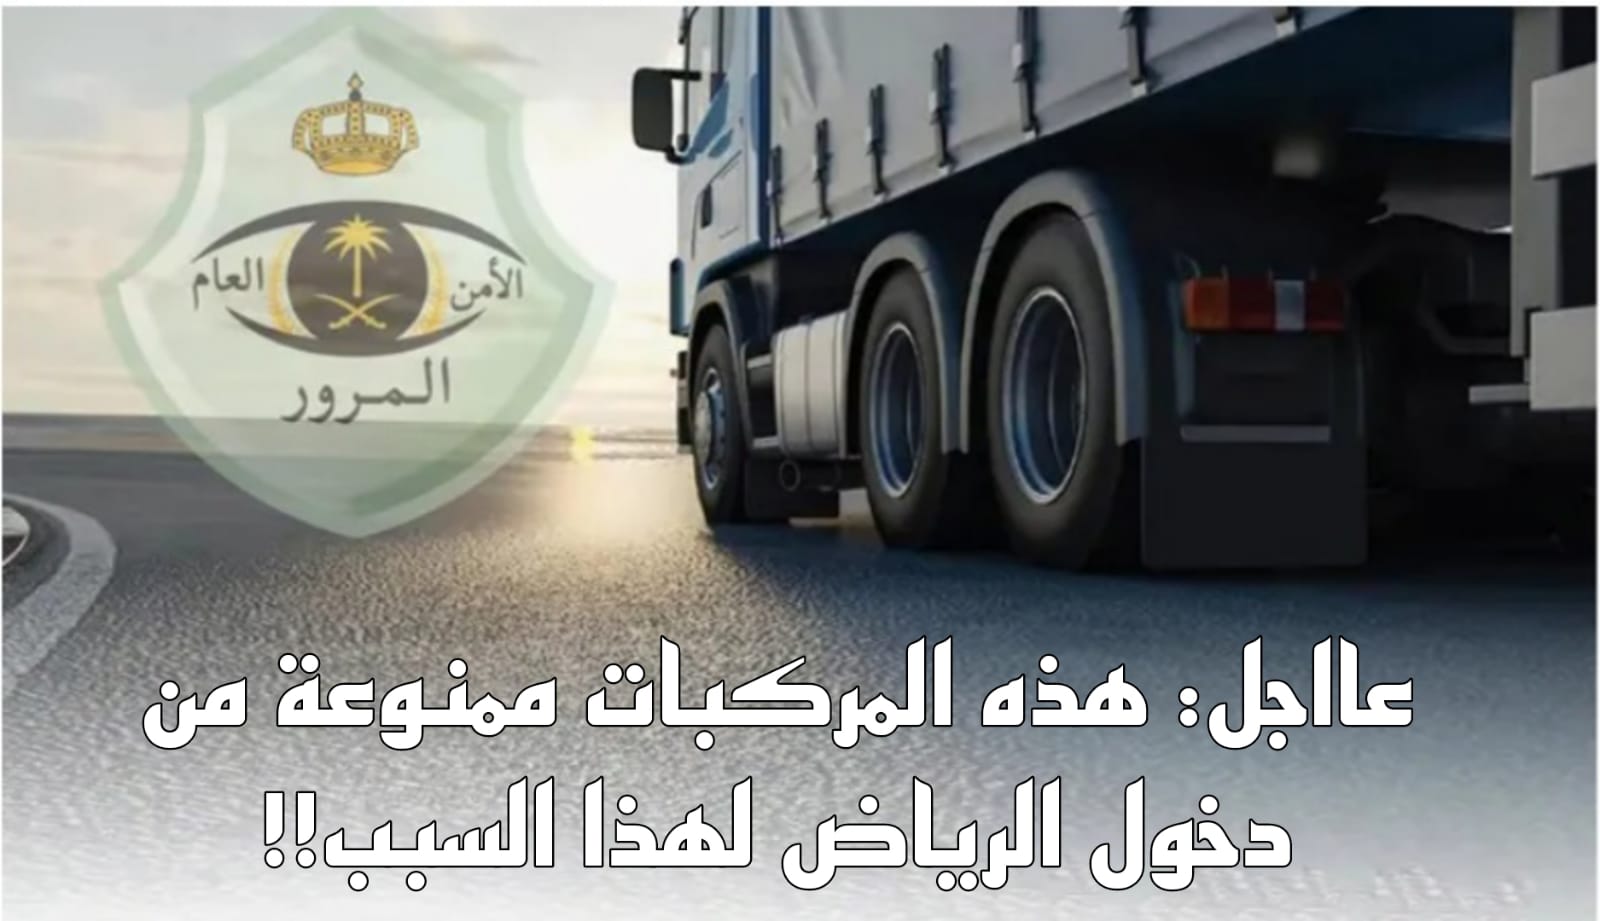 المركبات الممنوعة من دخول الرياض